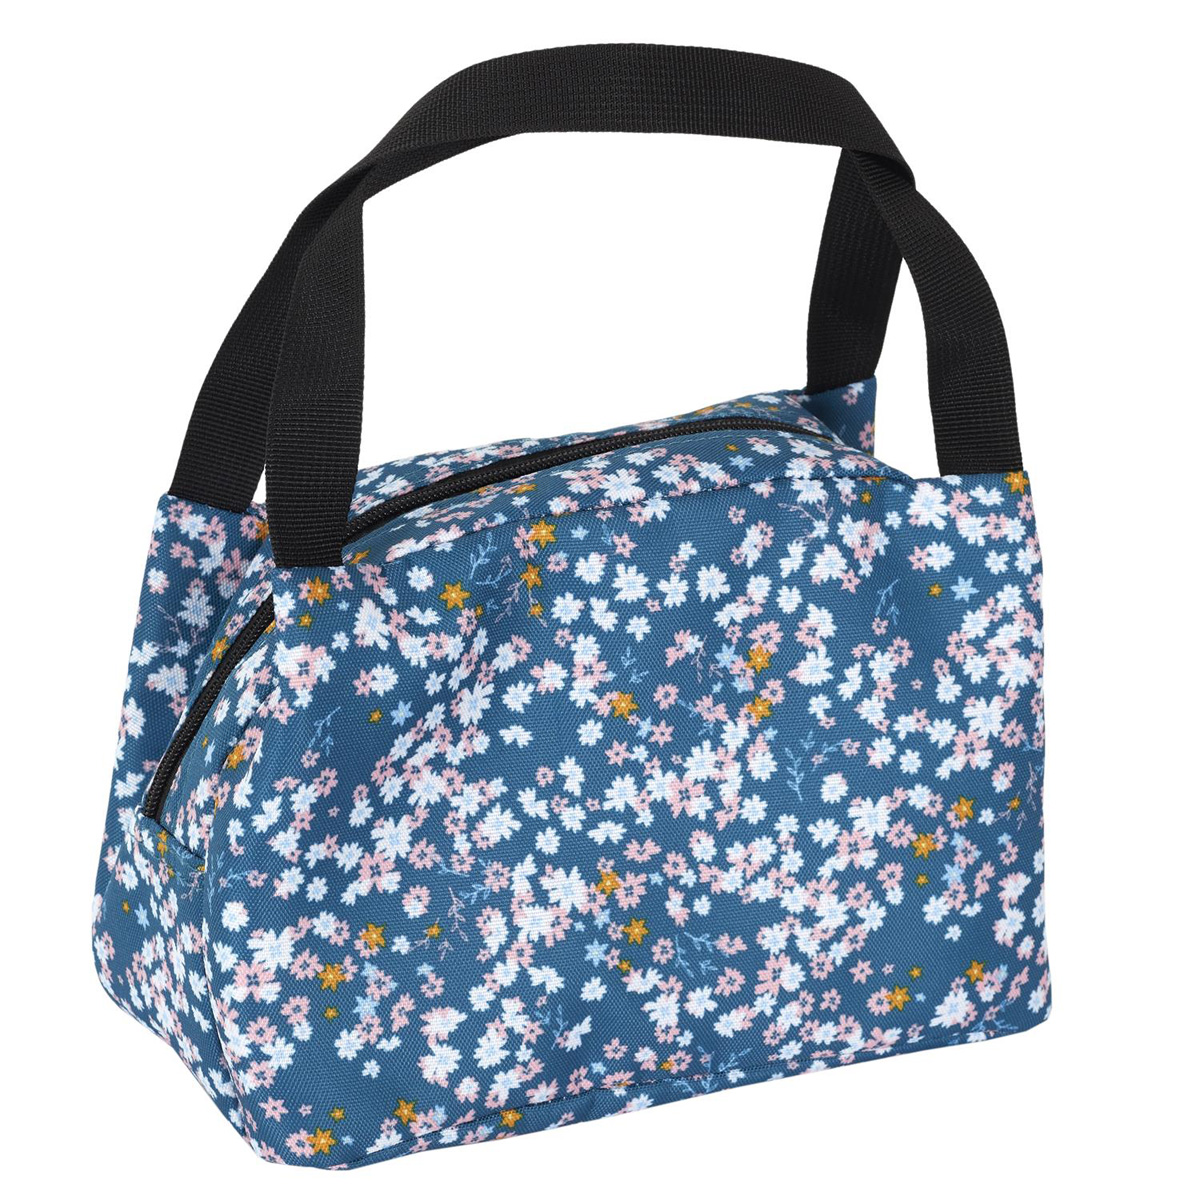 Sac repas fraicheur / Lunch bag \'Floral\' bleu - 25x16x14 cm - [A2874]